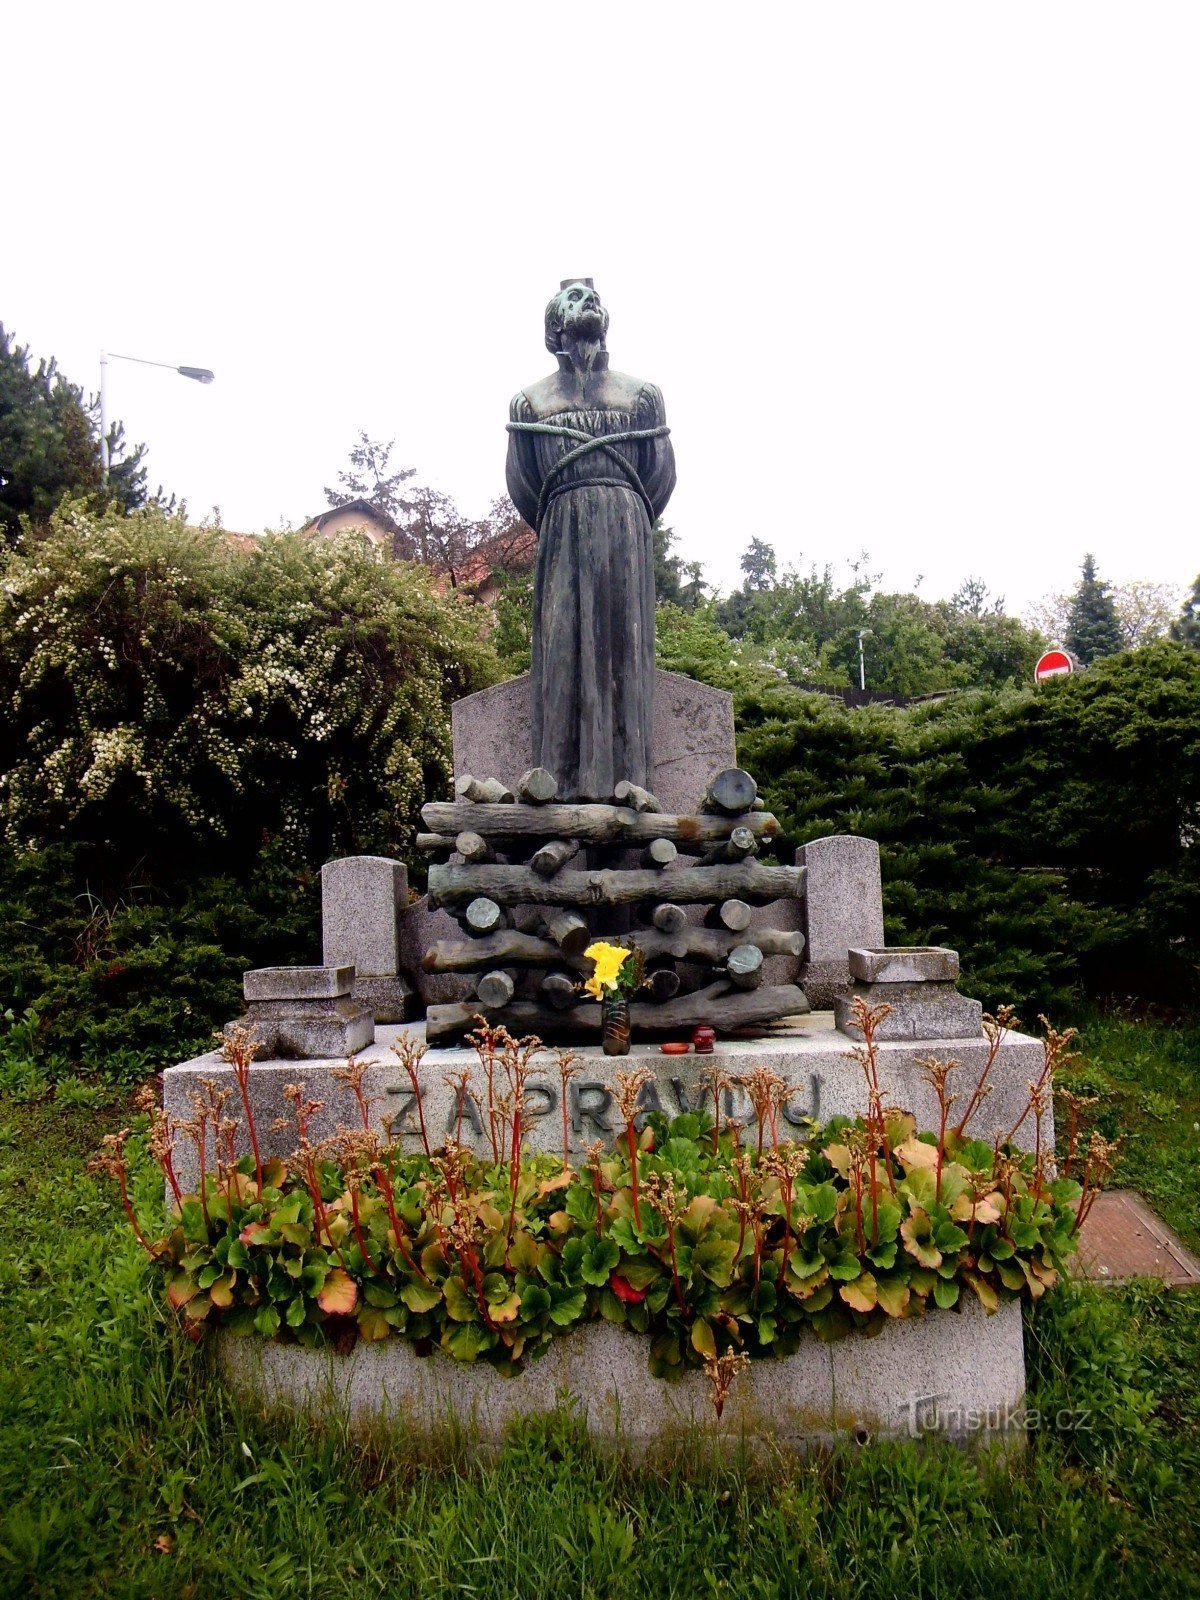 Đài tưởng niệm Jan Hus - Zbraslav